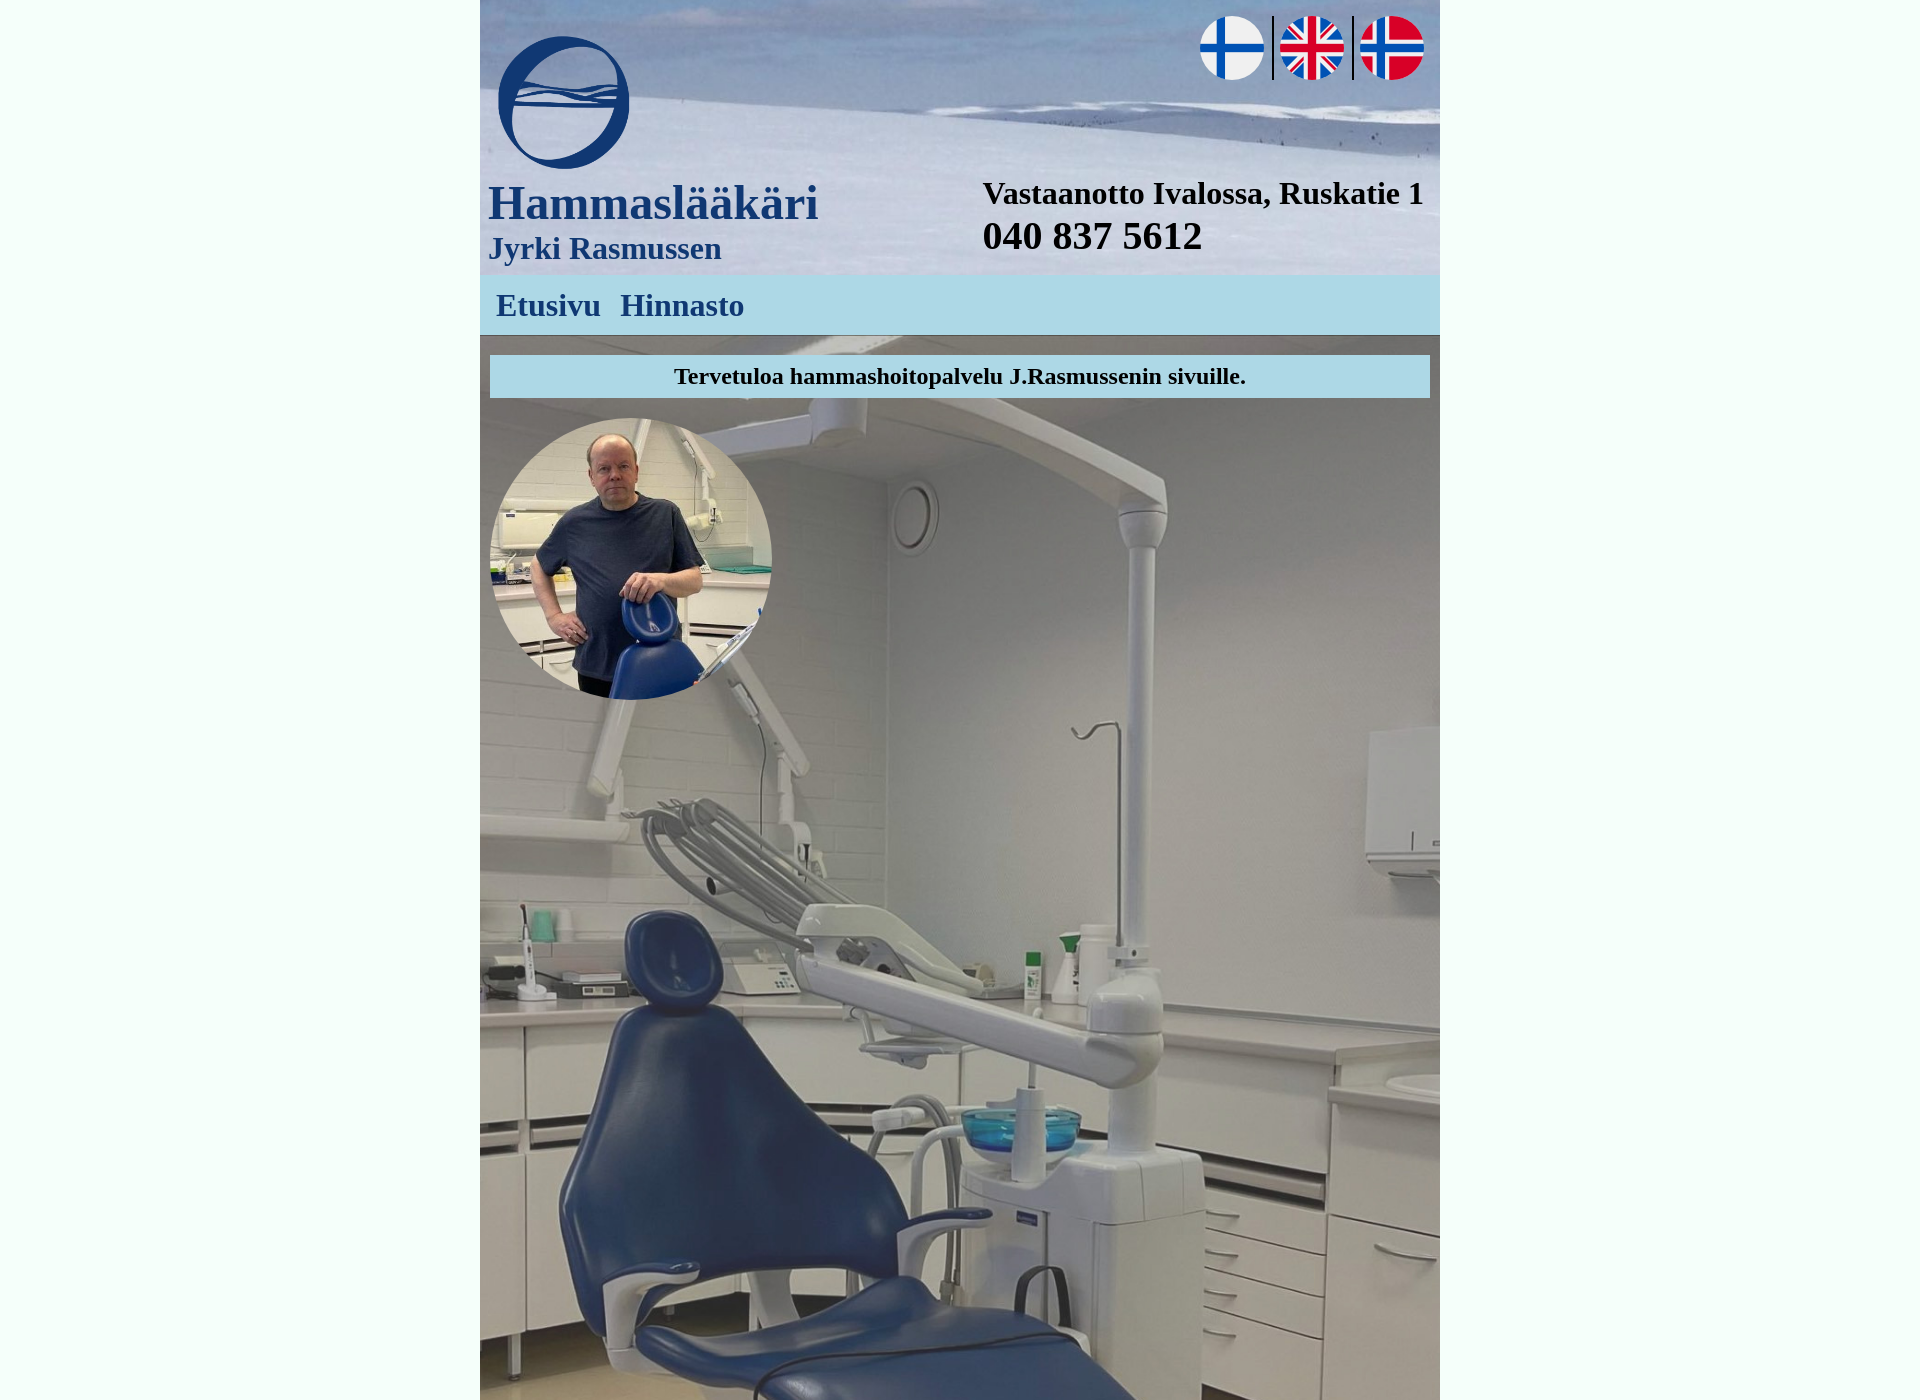 Skärmdump för hammashoitopalvelurasmussen.fi